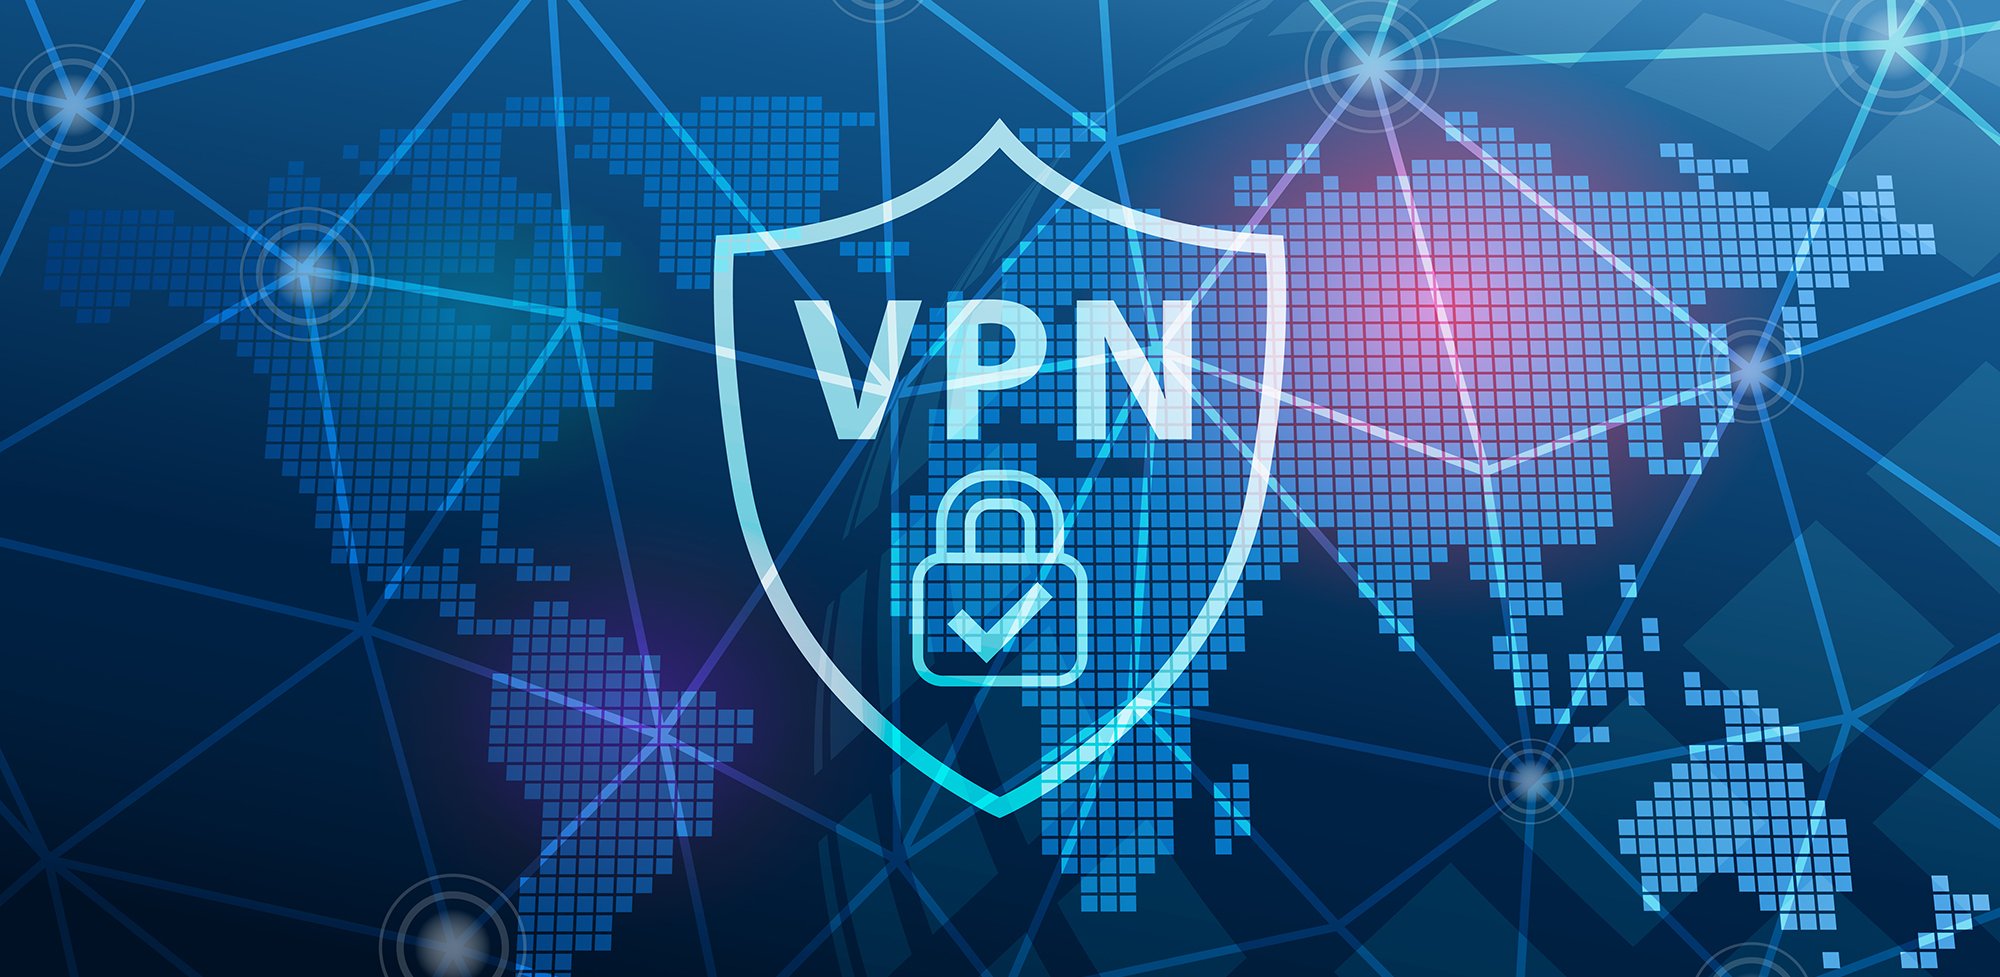 VPN om regionale blokkades te omzeilen